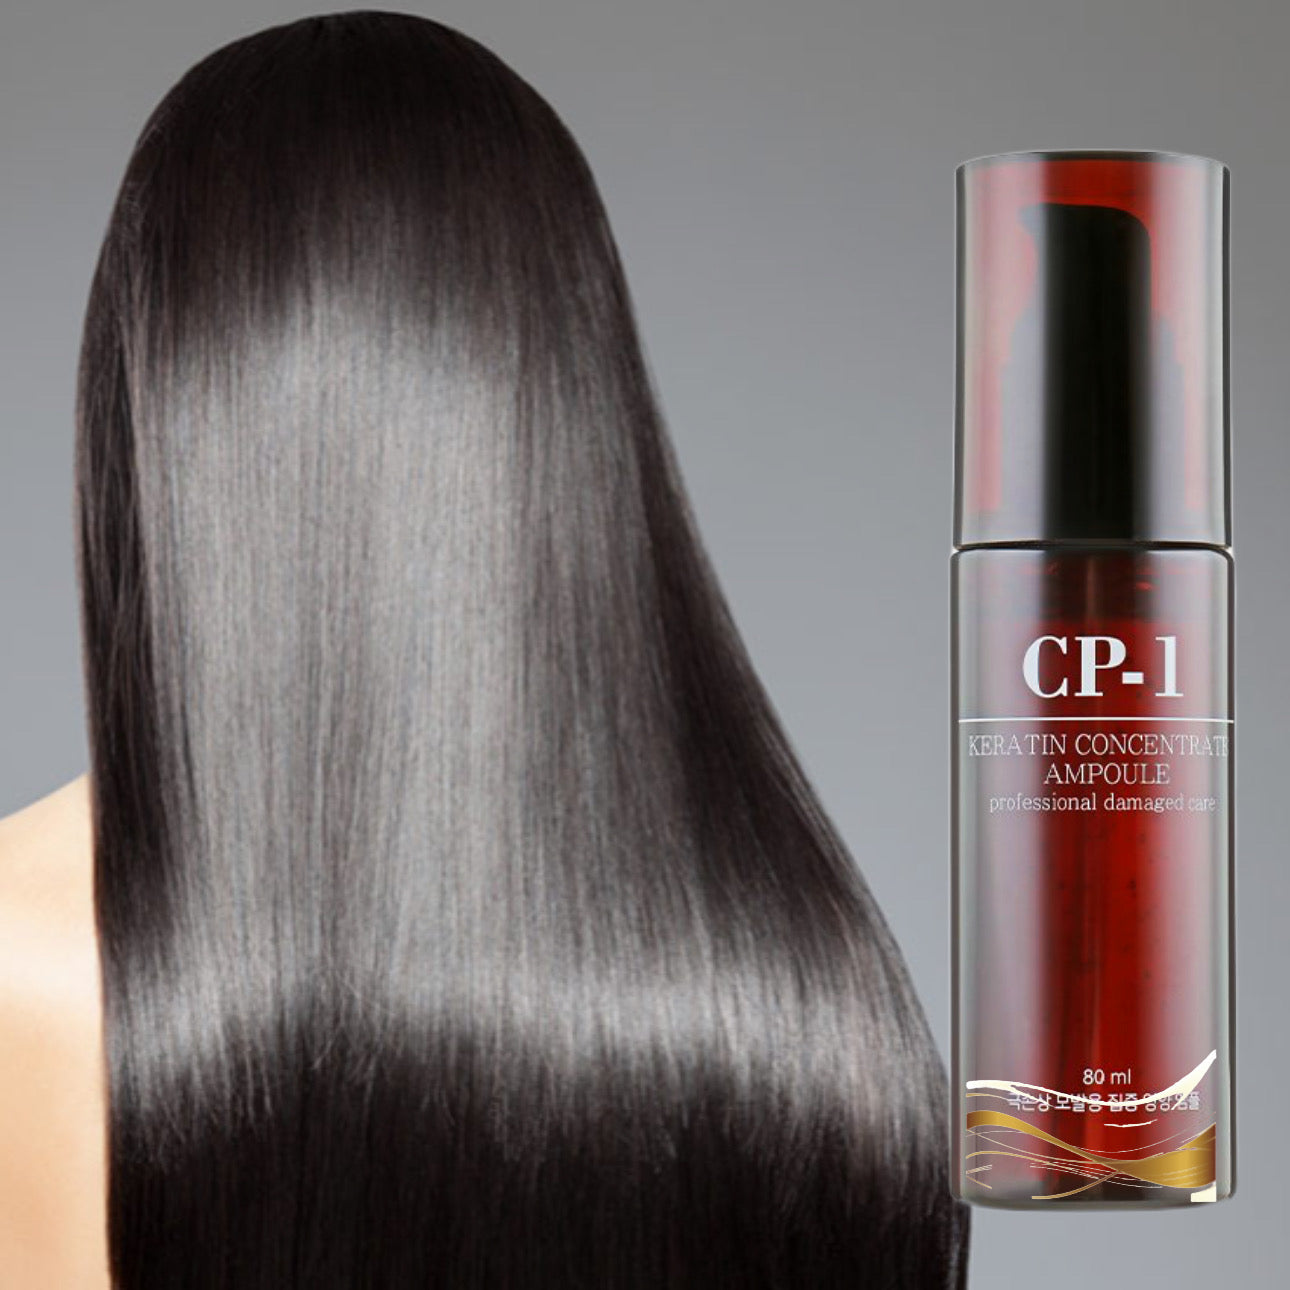 Απόσταγμα μαλλιών συμπυκνωμένο με κερατίνη της CP-1